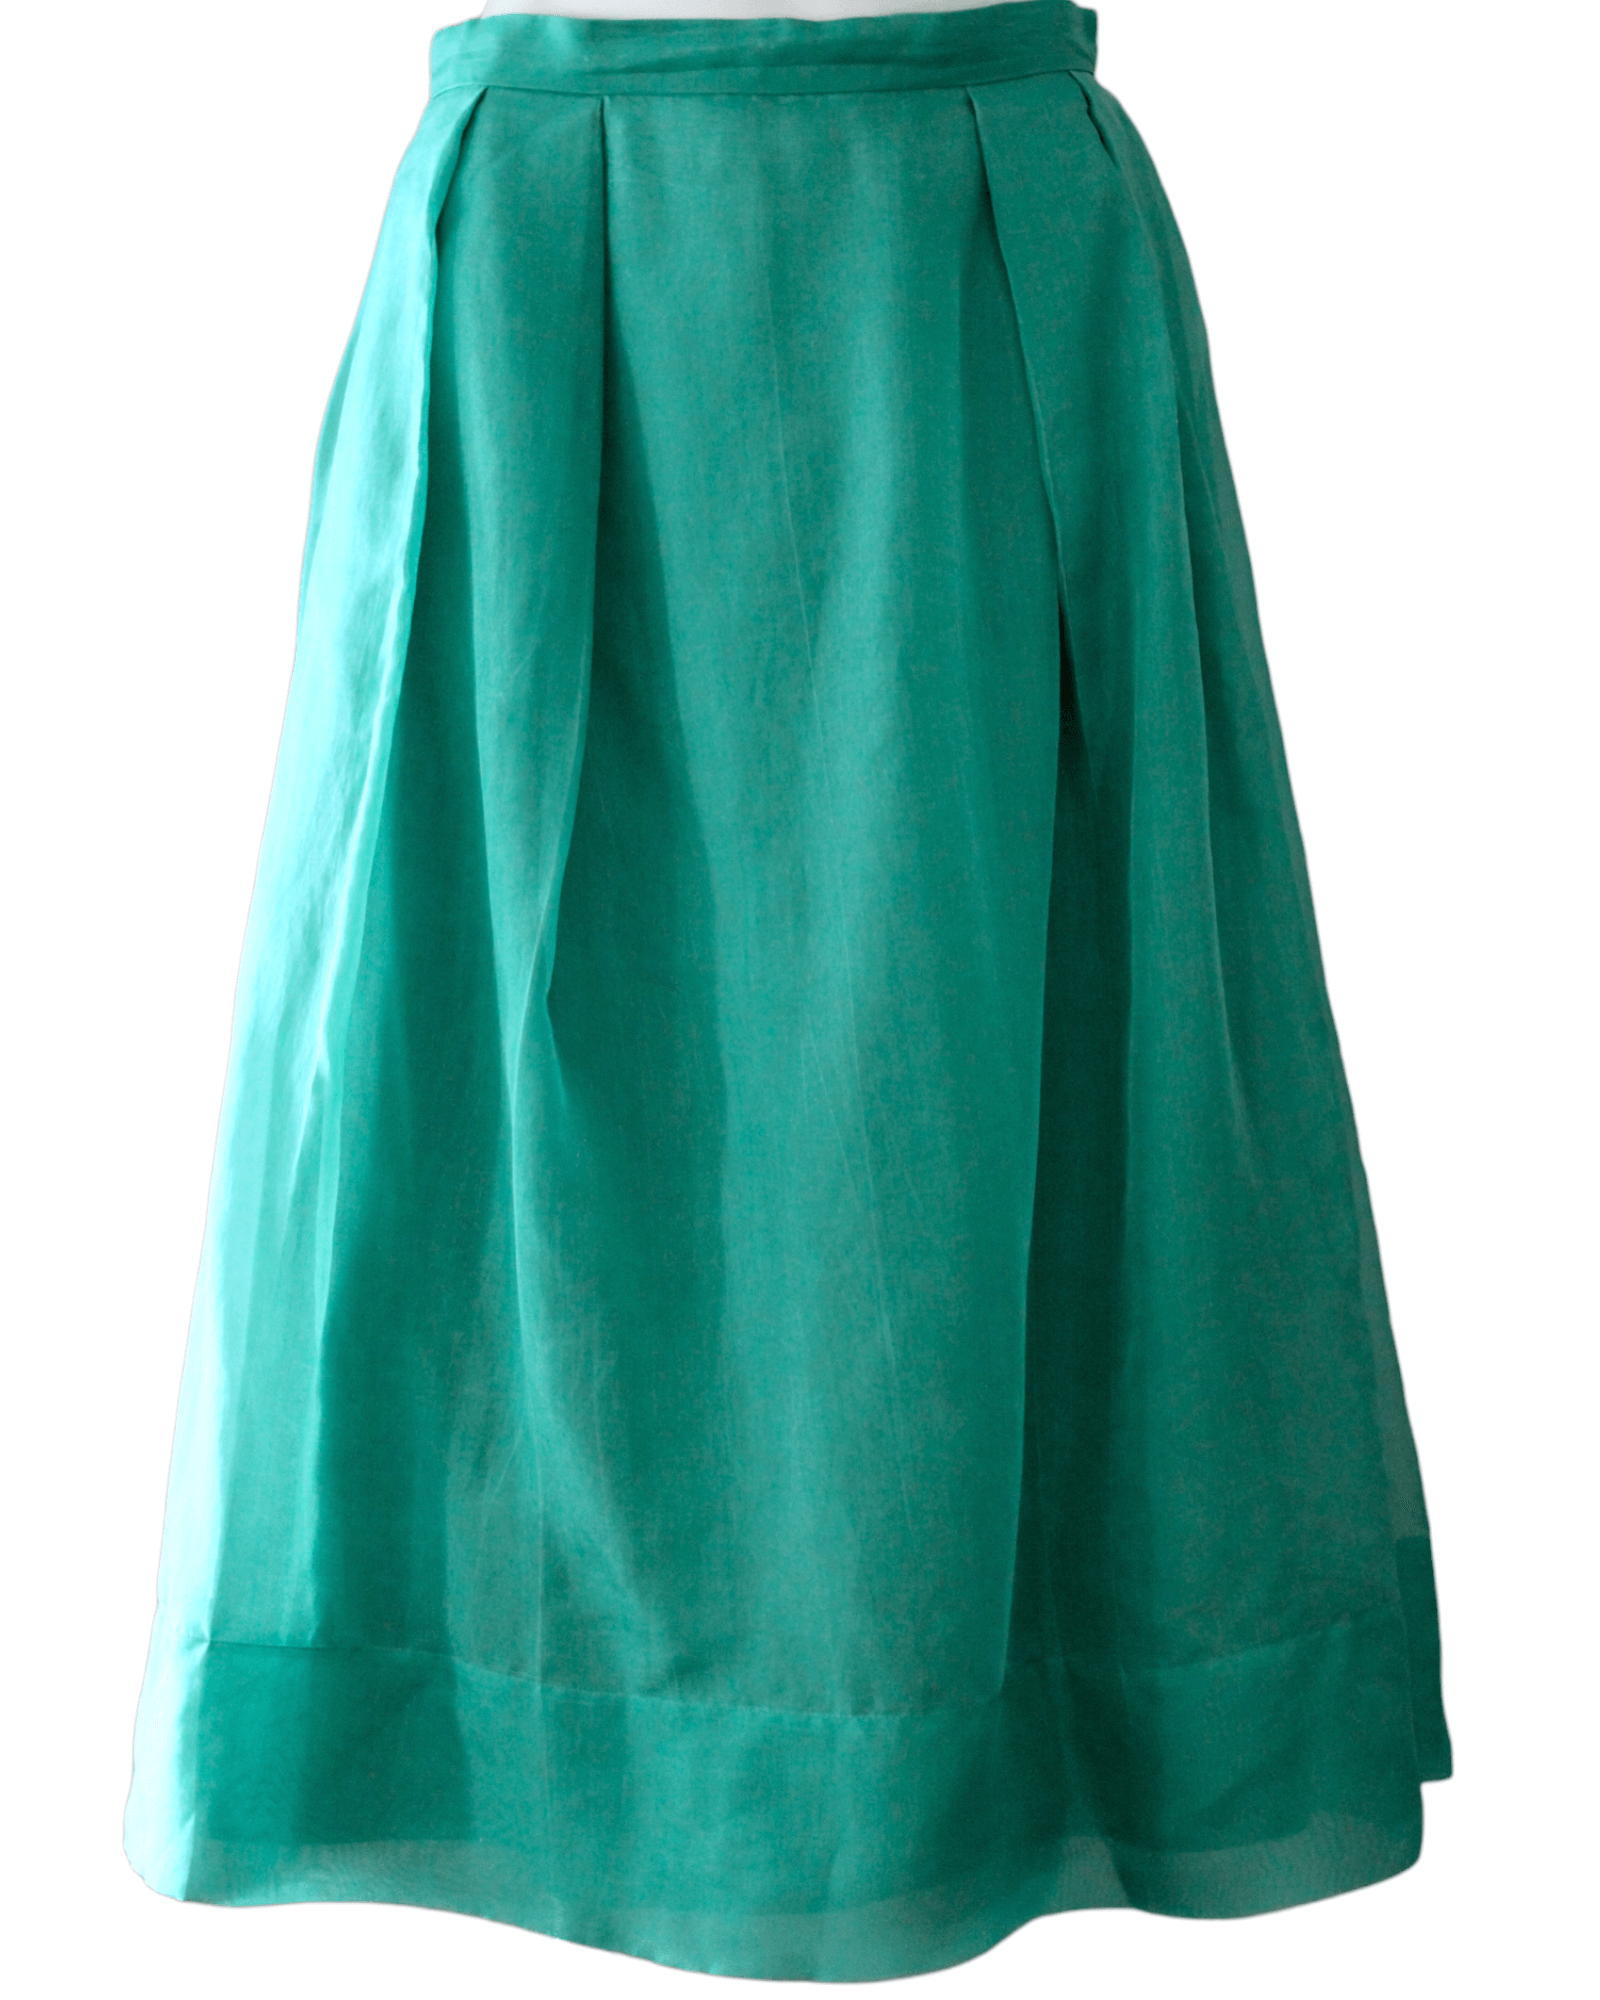 Cool Summer BODEN green pleated silk skirt